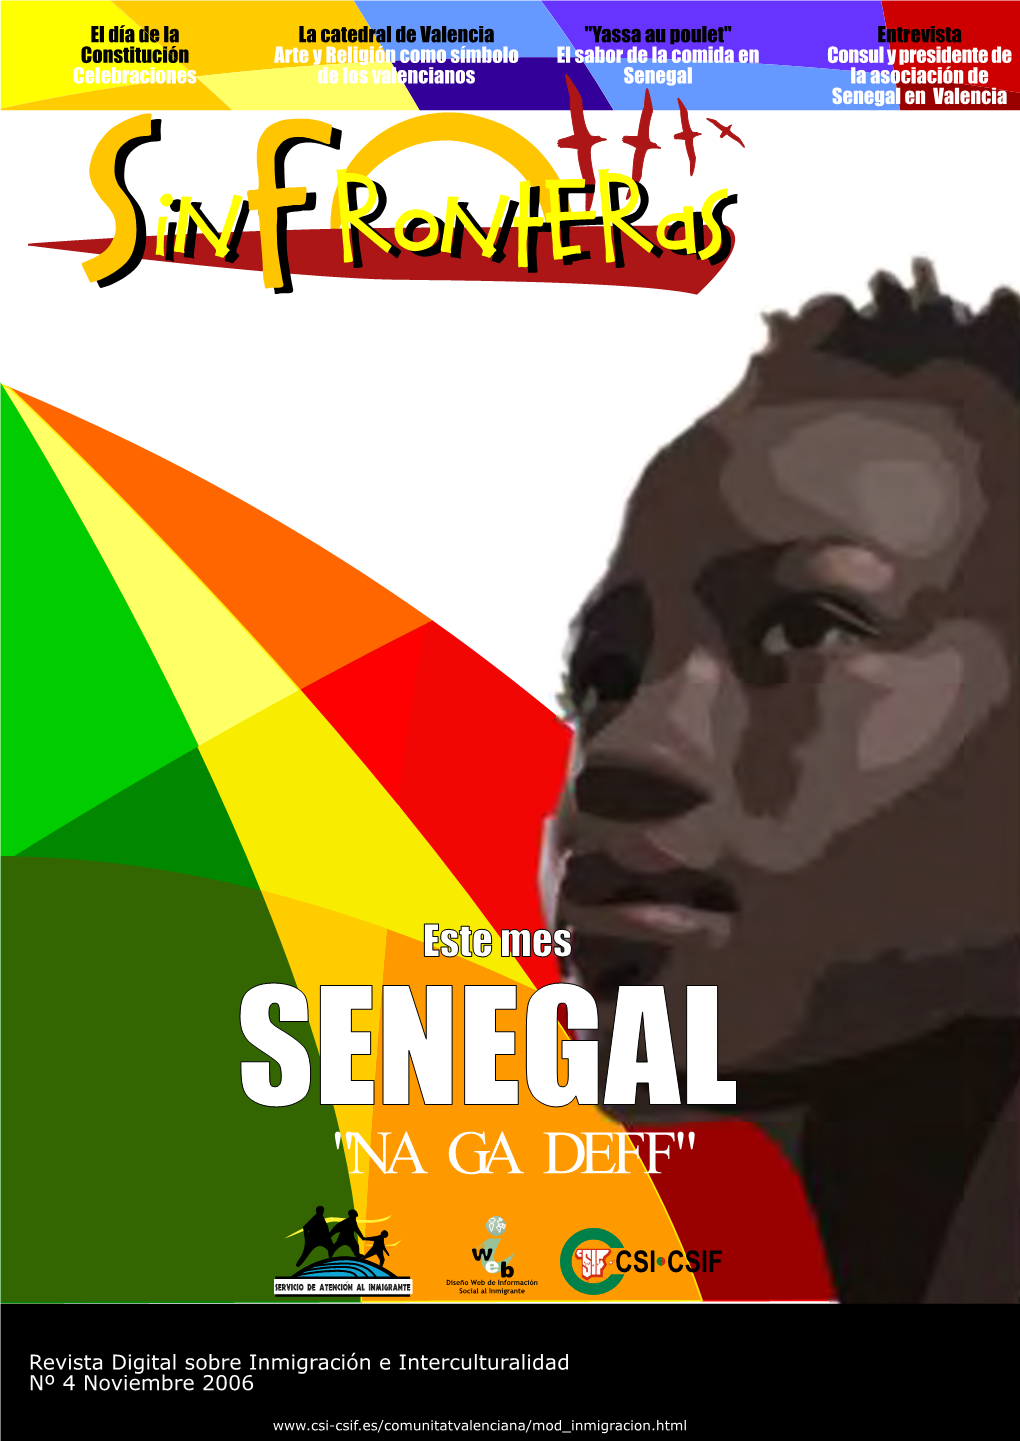 Senegal La Asociación De Senegal En Valencia